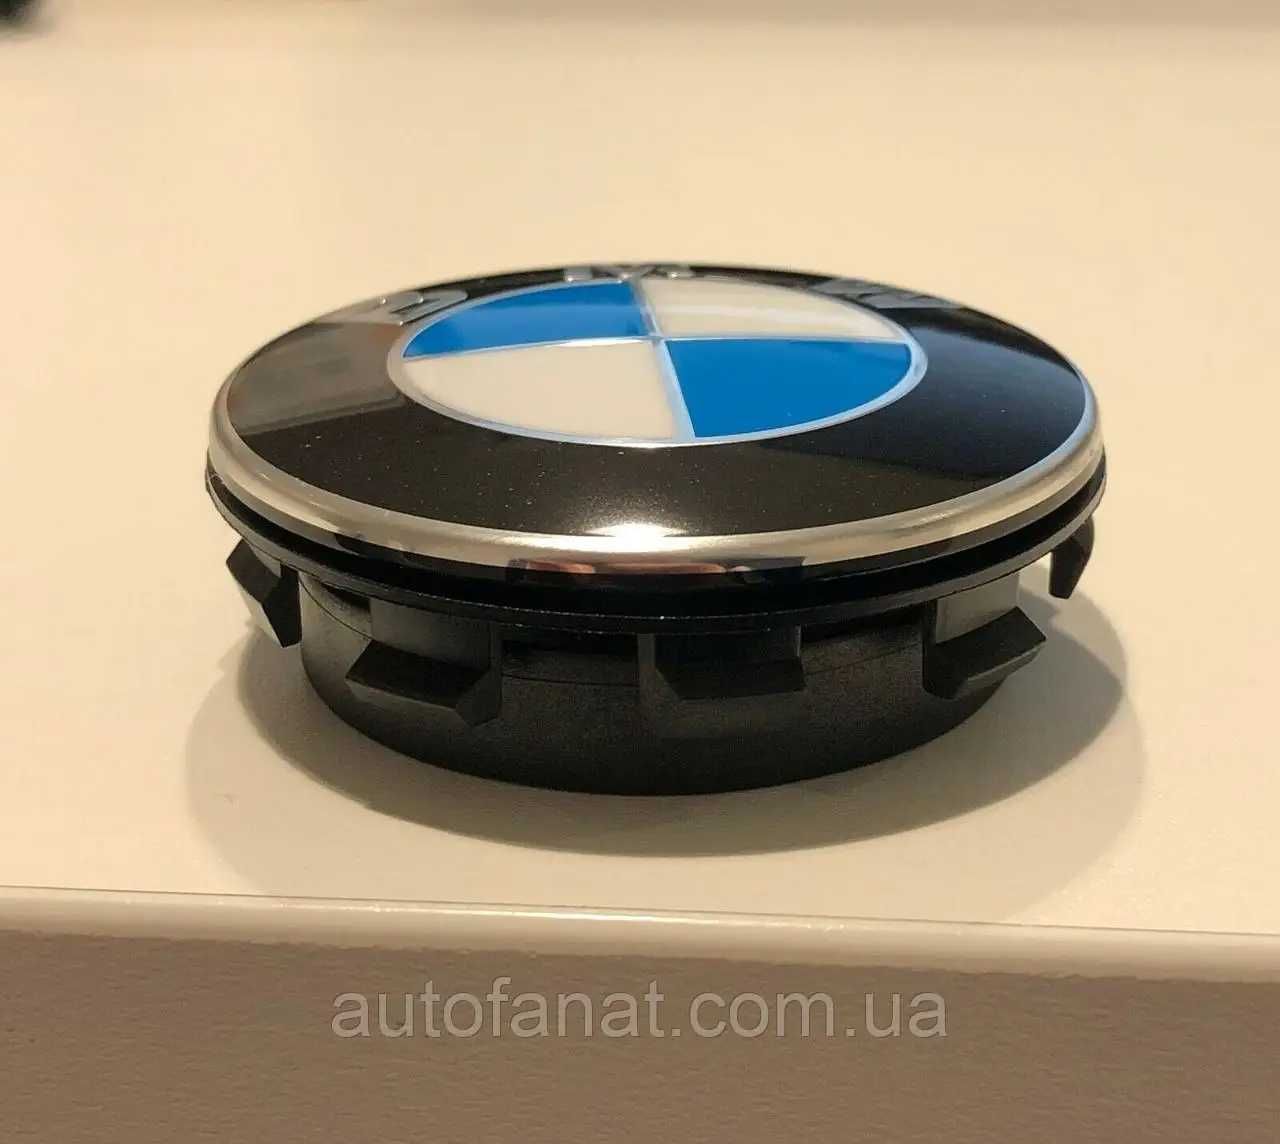 Ковпачки для дисків BMW, Оригінал комплект плаваючих накладок бмв